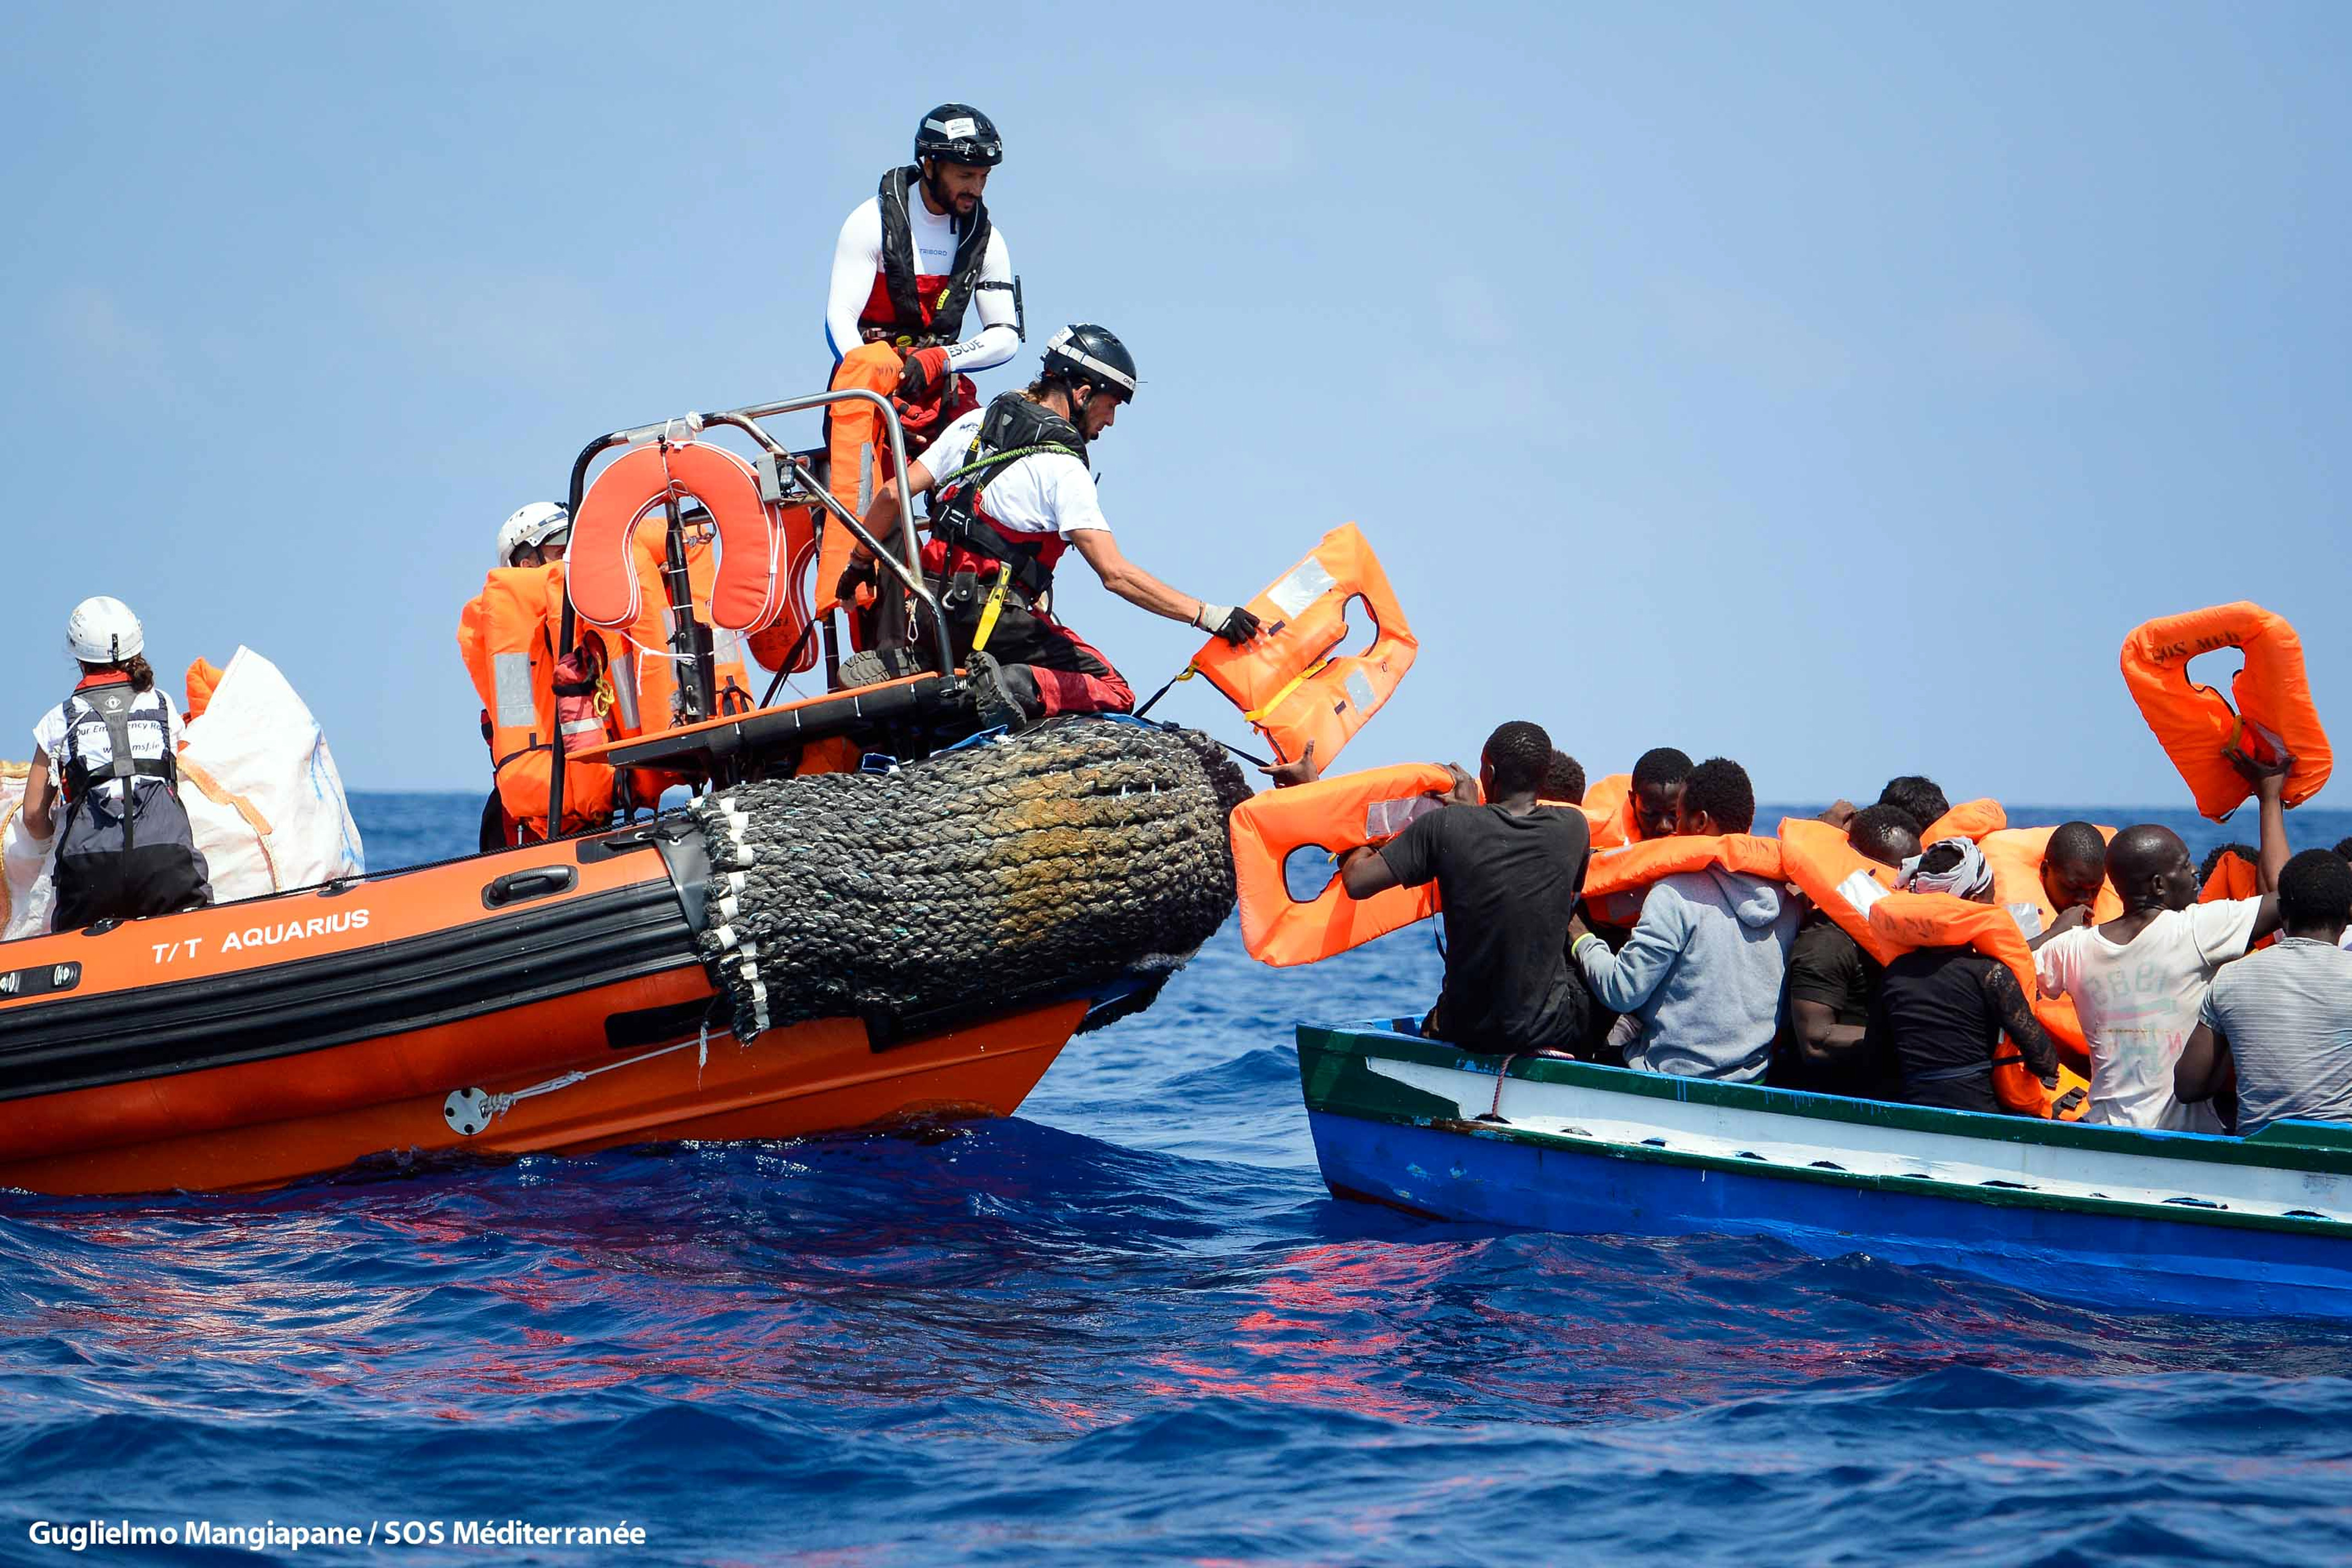 La llanxa de l'Aquarius donant salvavides als migrants d'un vaixell a la deriva, el 10 d'agost de 2018